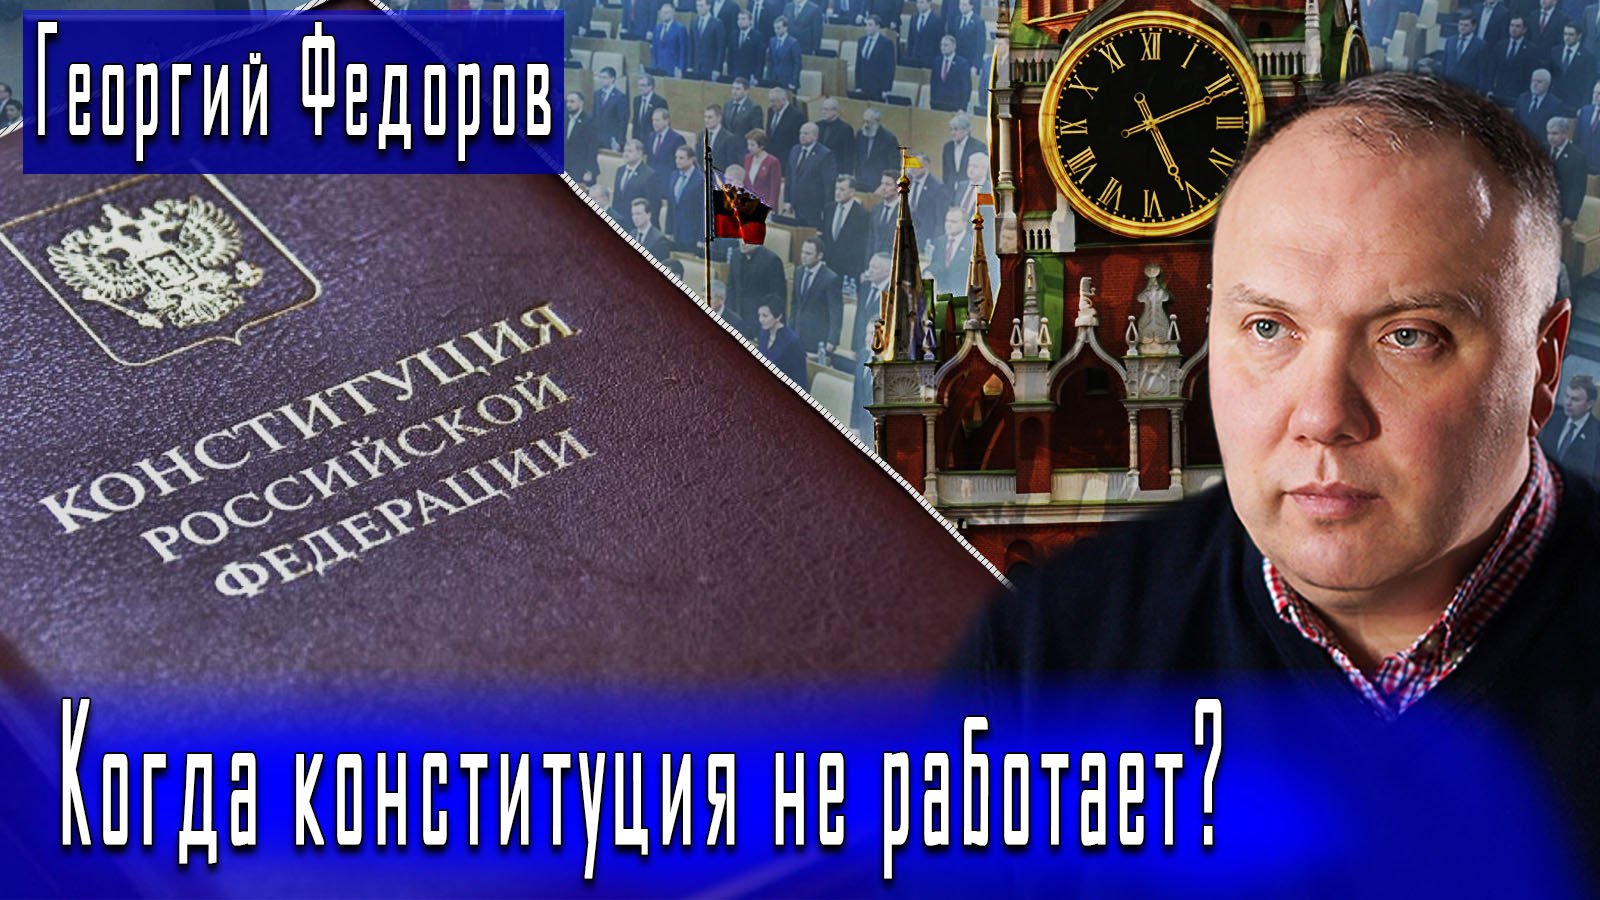 Когда конституция не работает? #ГеоргийФедоров #ДмитрийДанилов